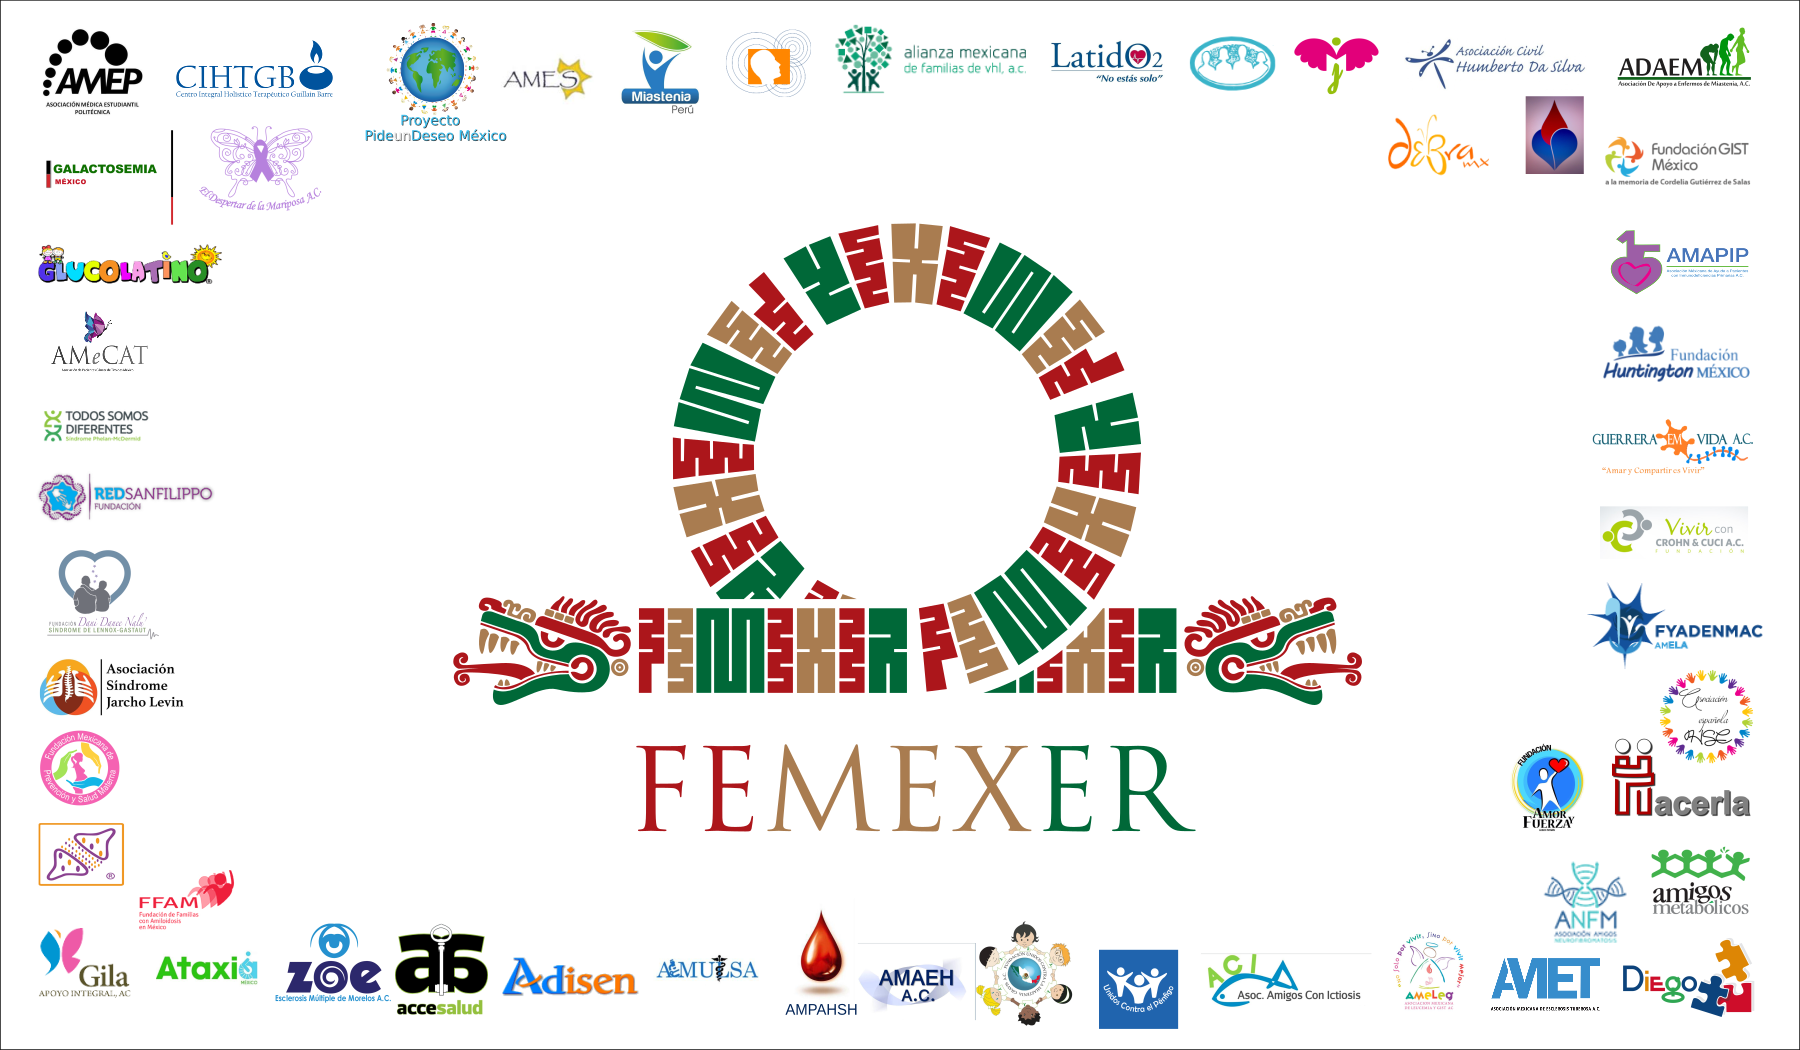 FEMEXER y sus aliados conmemoran el 10° aniversario del Día (Mundial) de las Enfermedades Raras 2017 en COFEPRIS